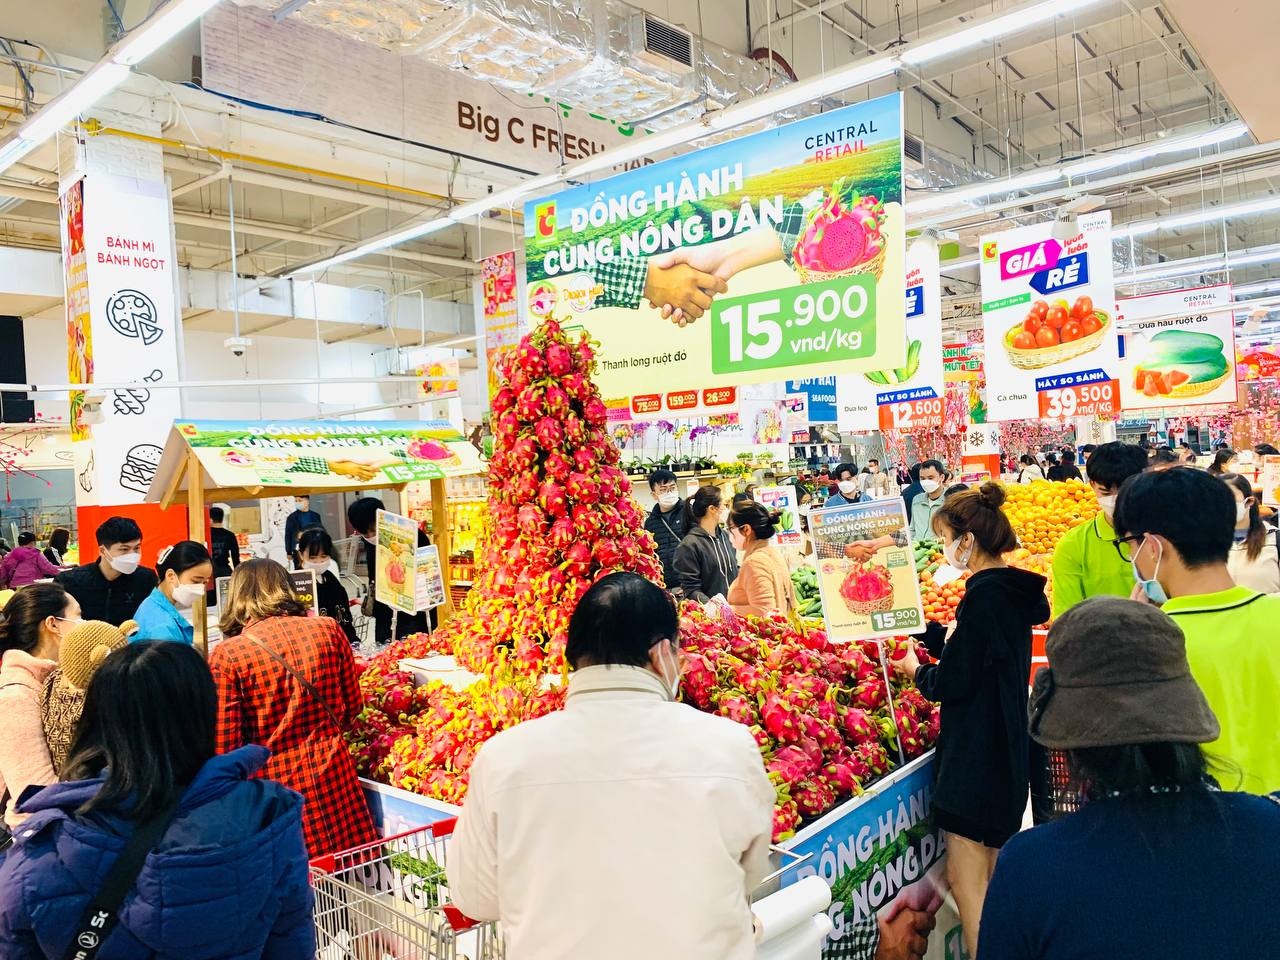 Người tiêu dùng Thủ đô Hà Nội hào hứng mua thanh long ruột đỏ, chất lượng cao, tại Big C Thăng Long.jpg